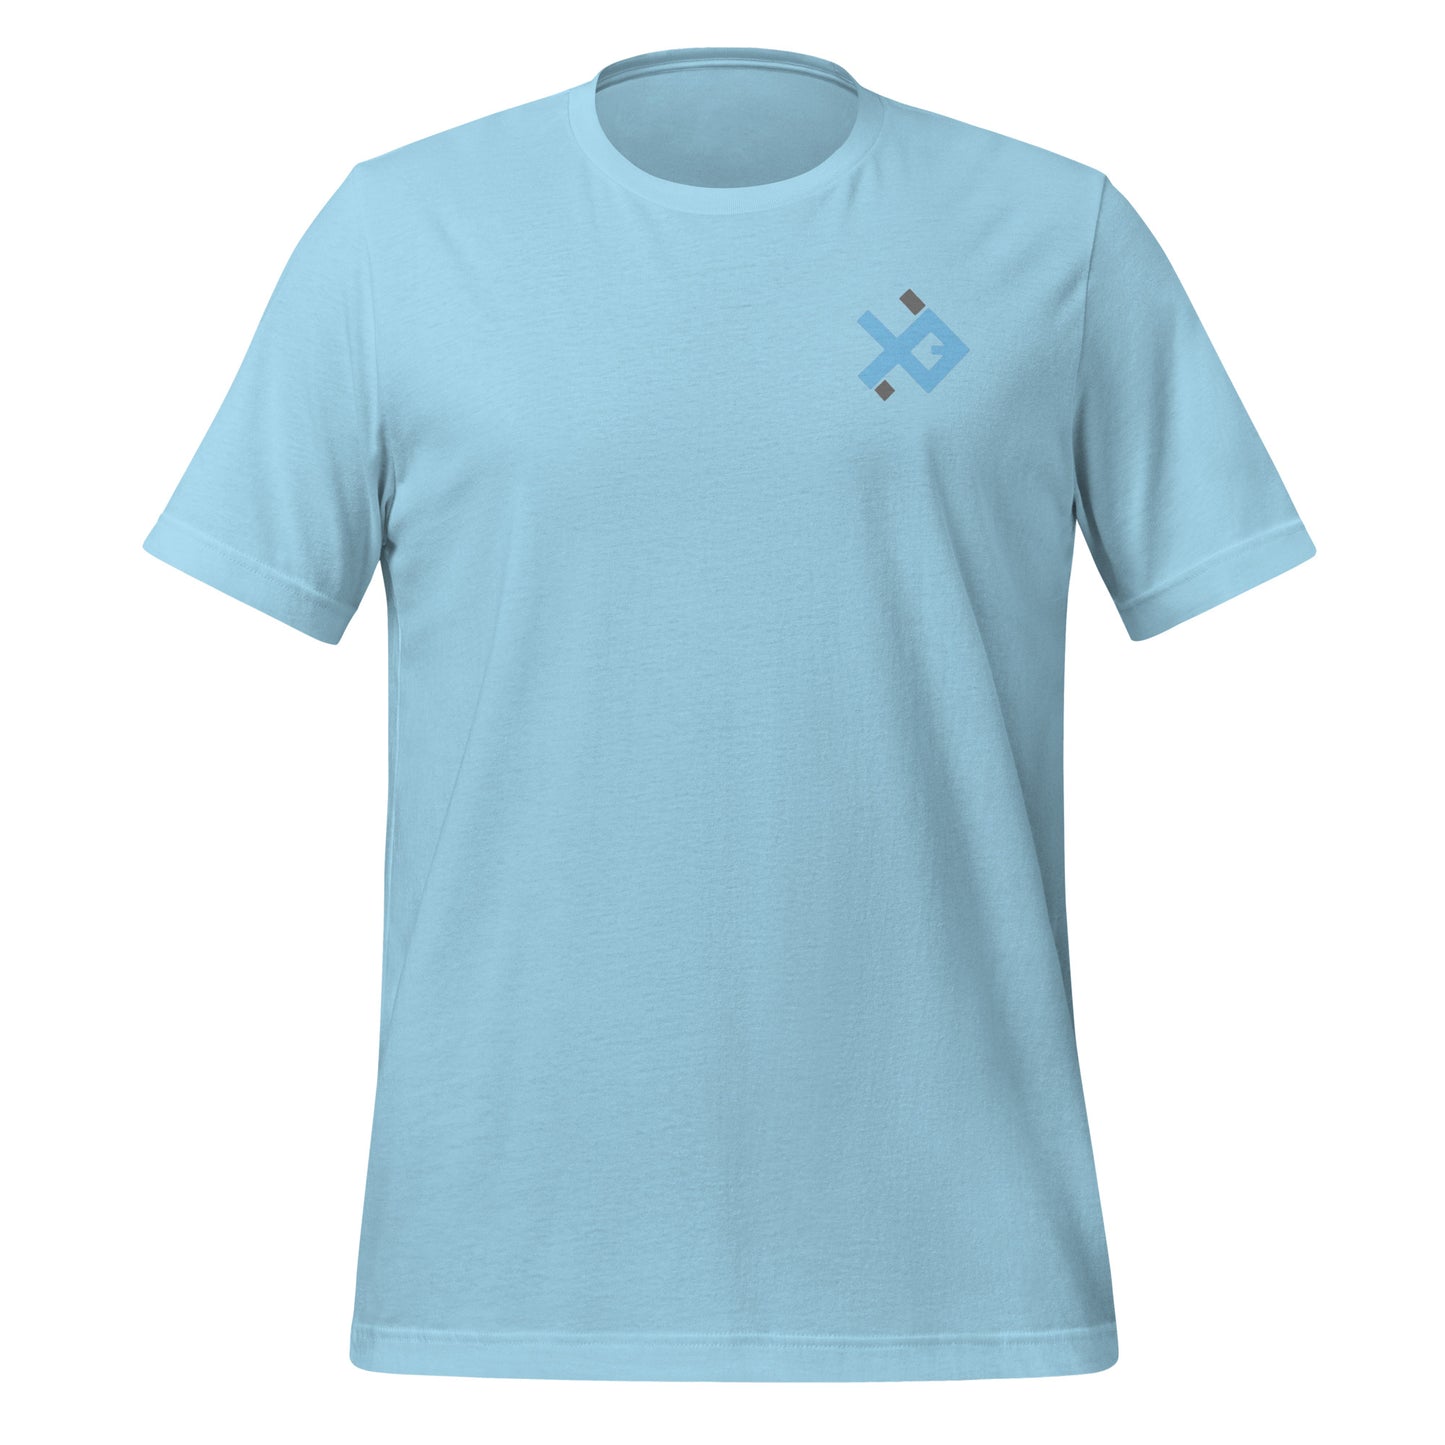 FishingHut Co T-Shirt